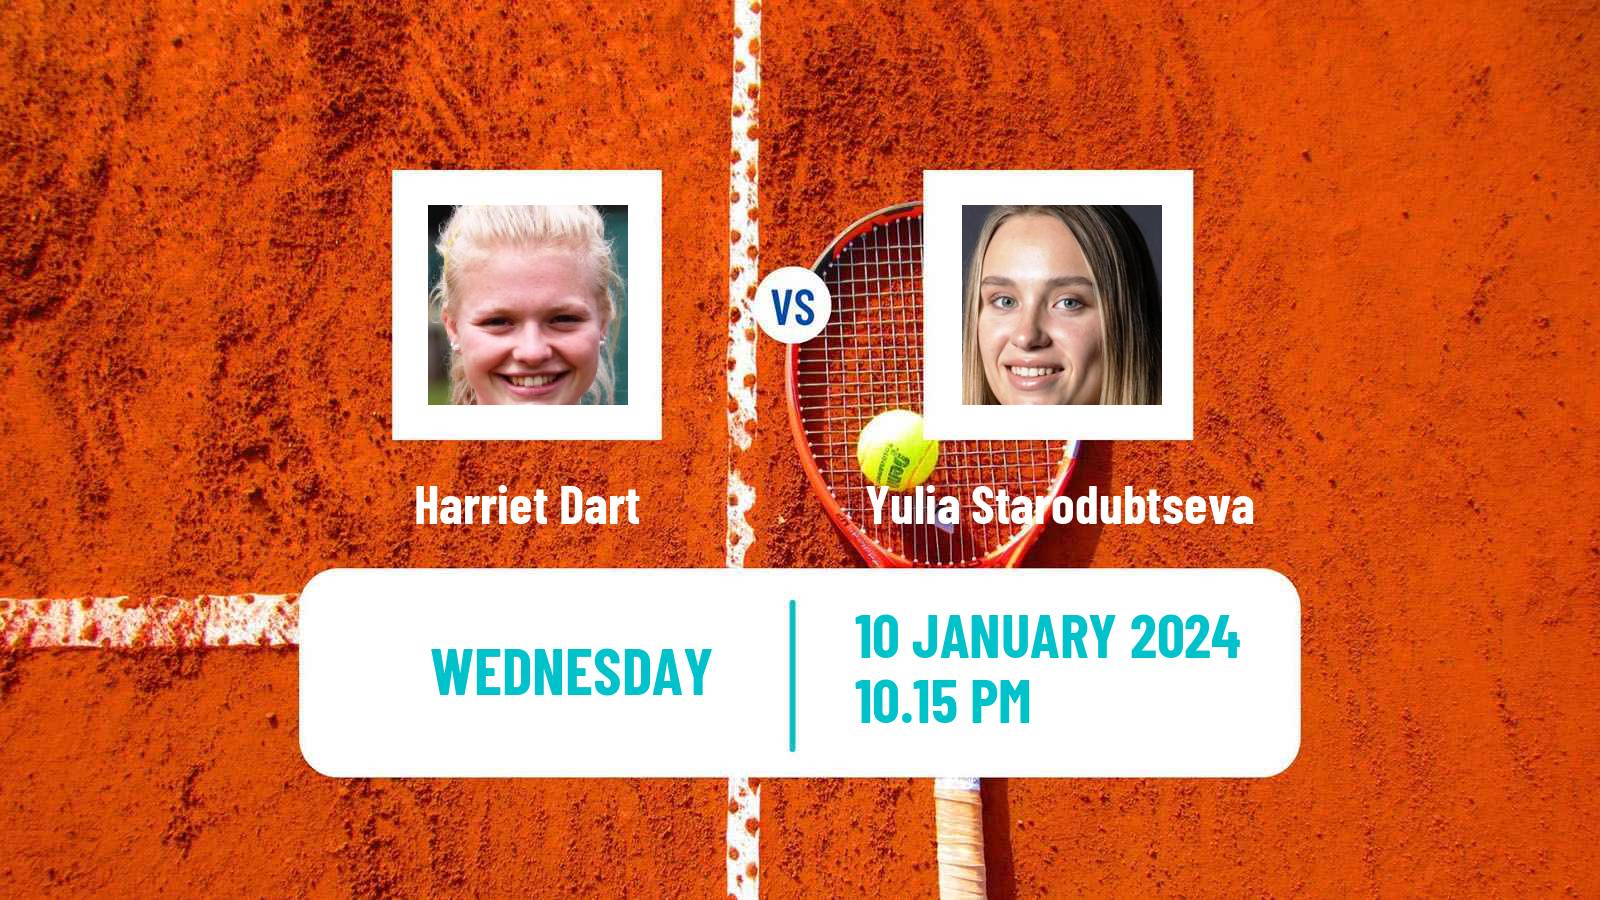 Tennis WTA Australian Open Harriet Dart - Yulia Starodubtseva